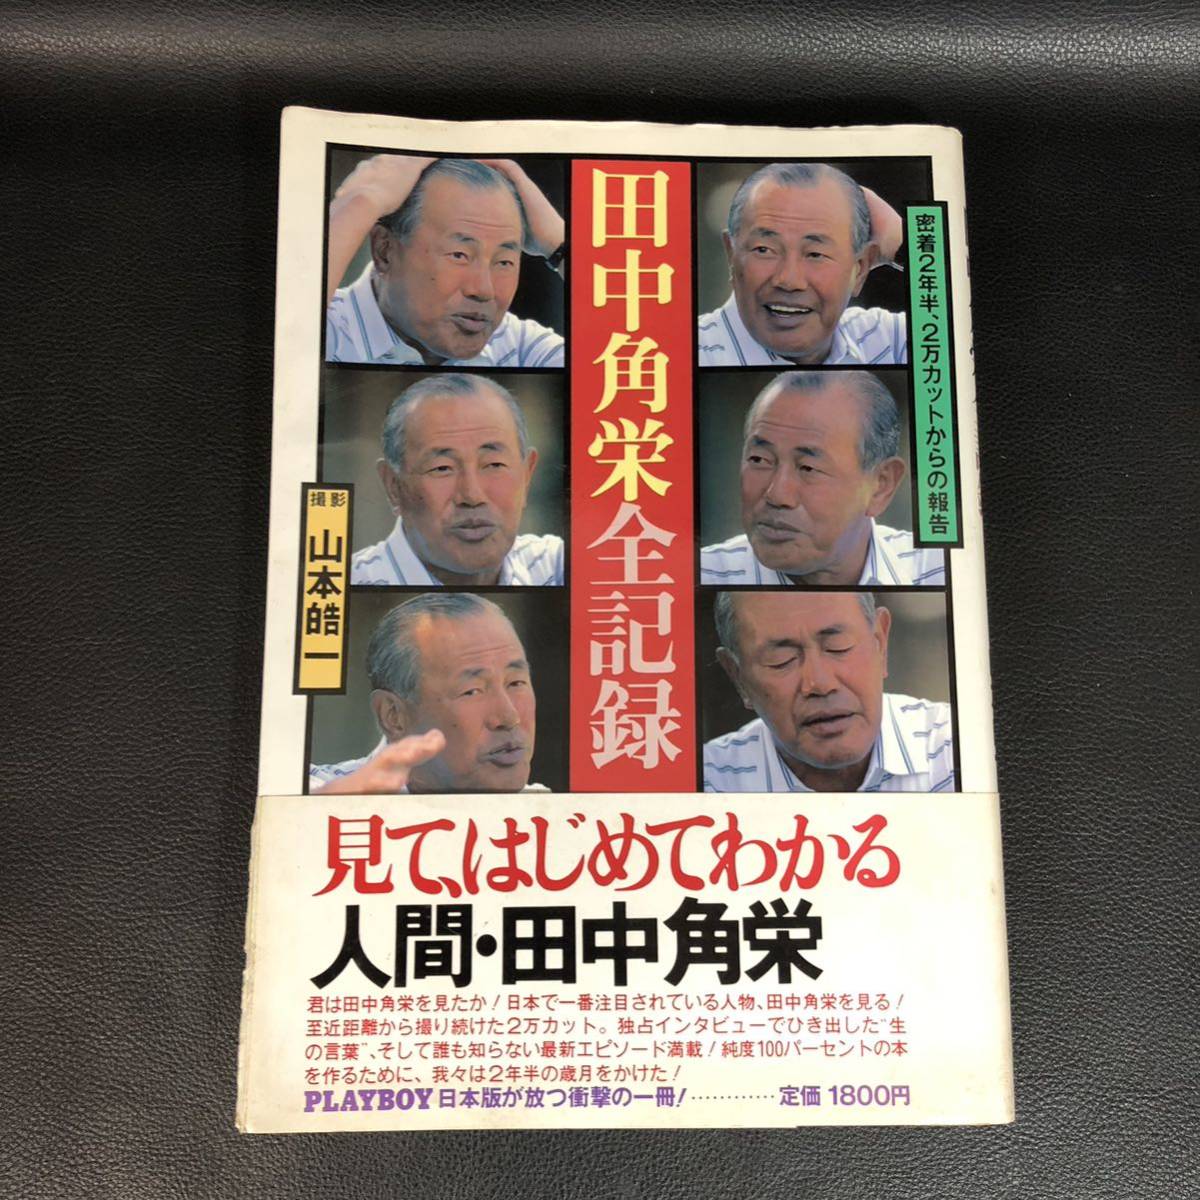 ☆ Первое издание ☆ Tanaka Kakuei All Record -Report от 20 000 сокращений в течение двух с половиной лет / Koichi Yamamoto Rare Rare